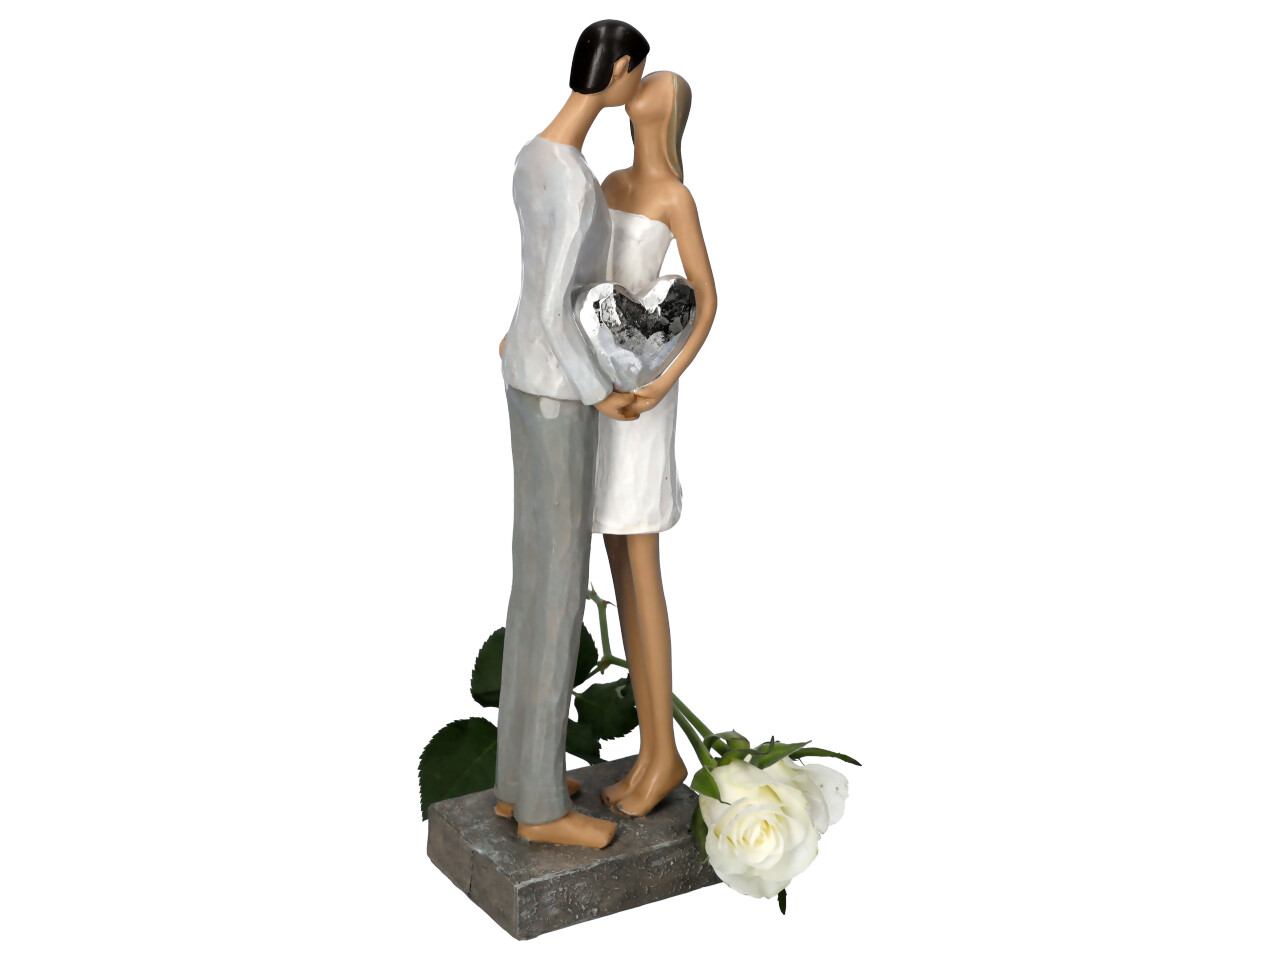 Küssendes Liebespaar stehend mit kleinem Silberherz in den Händen Seitenansicht Bräutigam mit weißer Rose drappiert